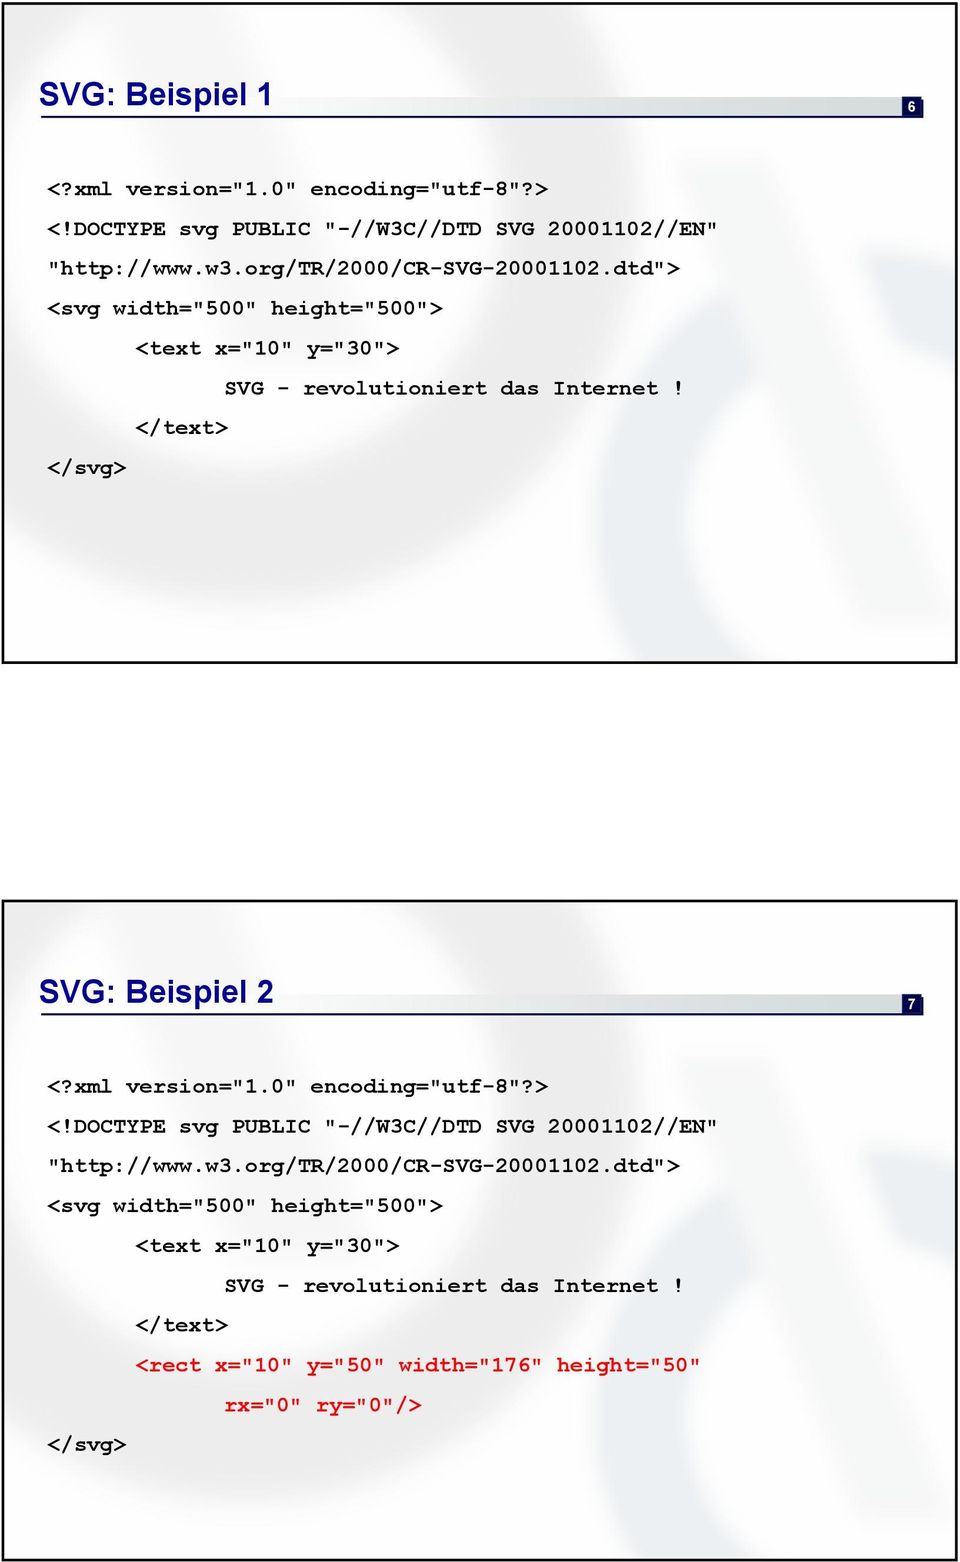 </text> </svg> SVG: Beispiel 2 7 <?xml version="1.0" encoding="utf-8"?> <!DOCTYPE svg PUBLIC "-//W3C//DTD SVG 20001102//EN" "http://www.w3.